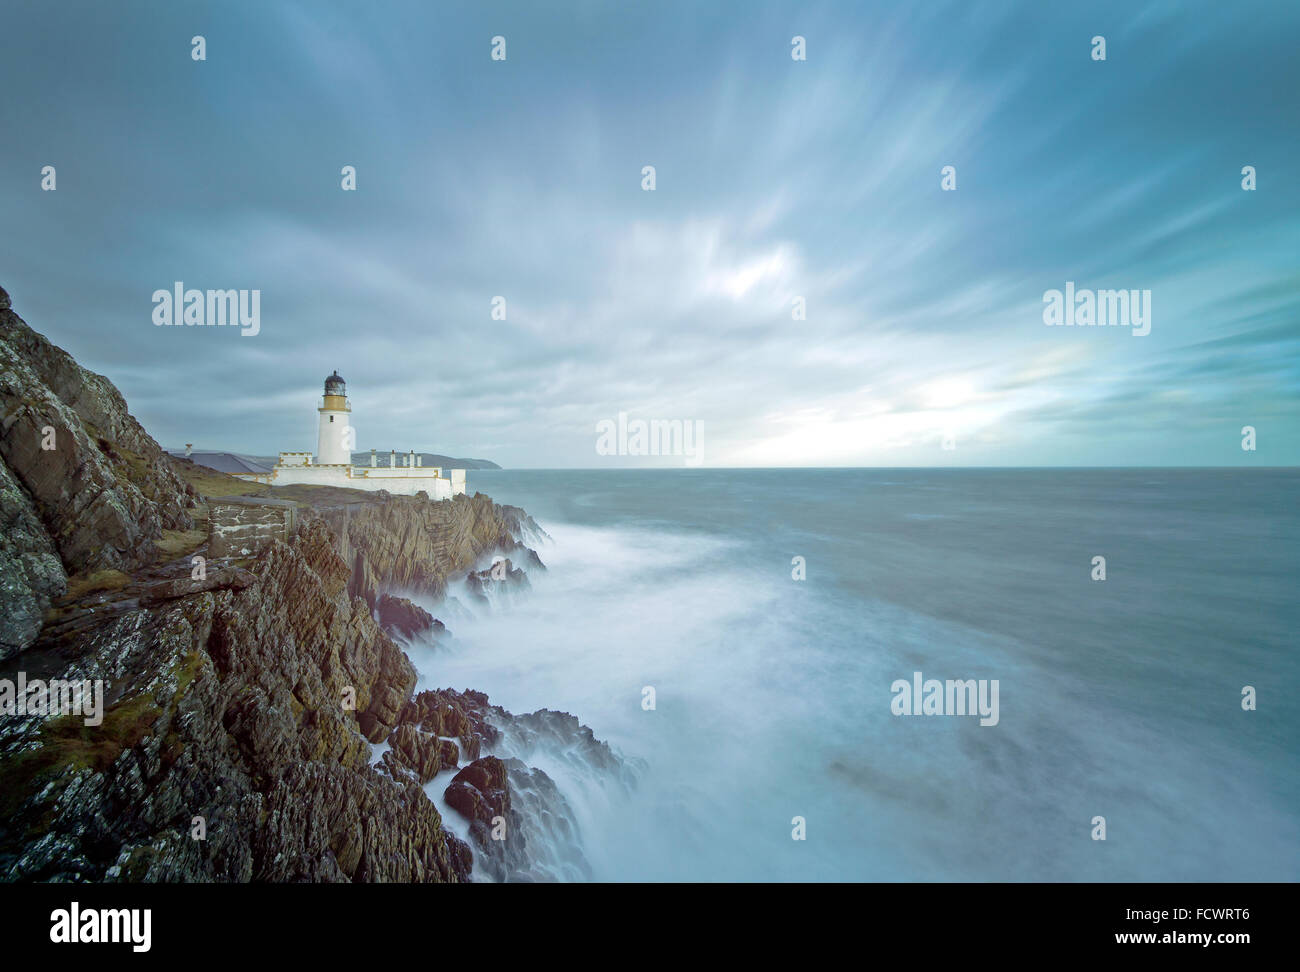 Une longue exposition d'une mer agitée avec le phare sur le haut de falaises rocheuses. Emplacement, Douglas, Ile de Man, Royaume-Uni Banque D'Images